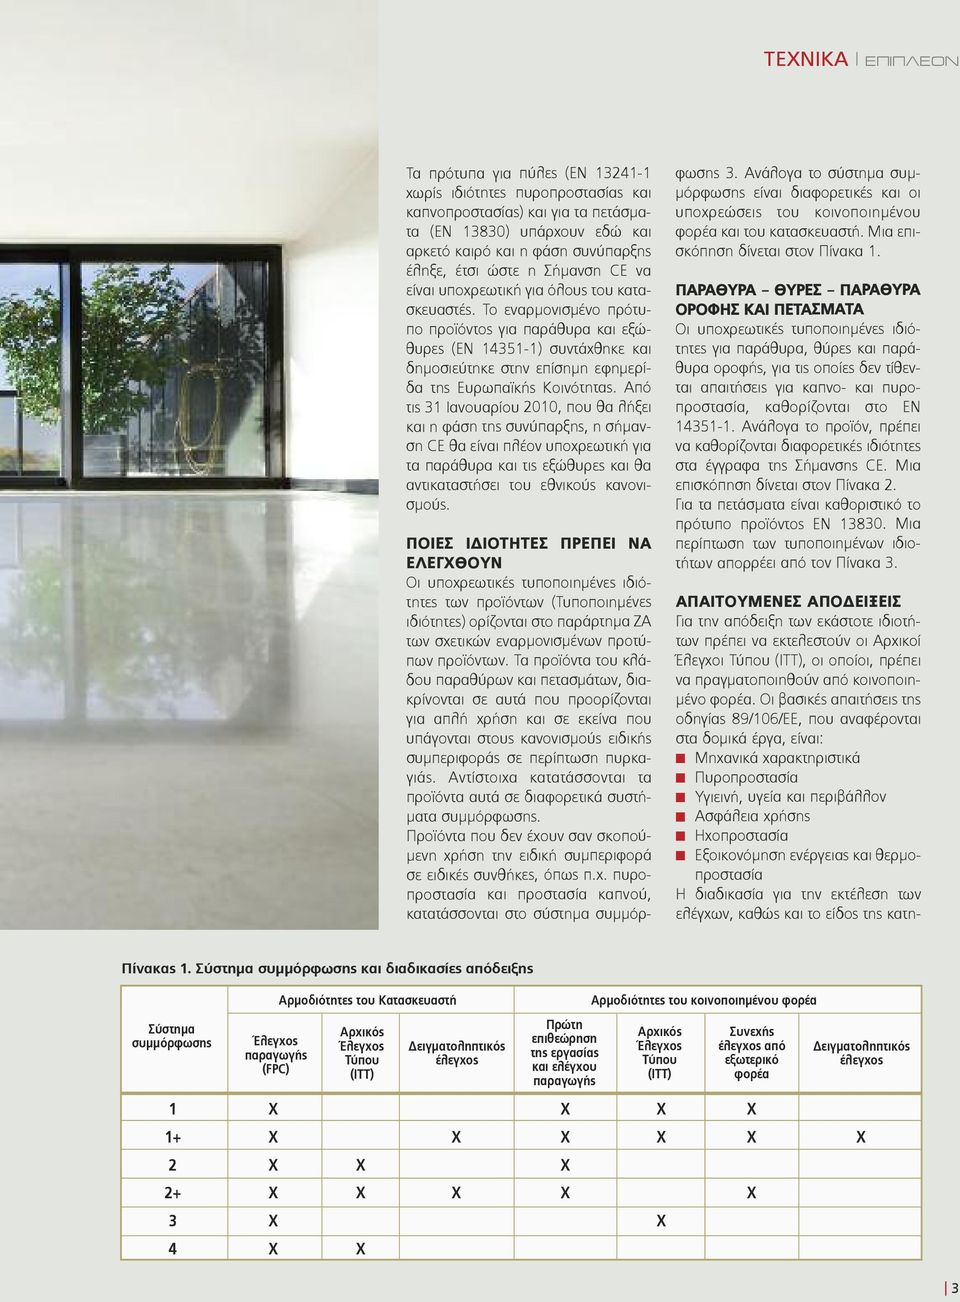 Το εναρμονισμένο πρότυπο προϊόντος για παράθυρα και εξώθυρες (ΕΝ 14351-1) συντάχθηκε και δημοσιεύτηκε στην επίσημη εφημερίδα της Ευρωπαϊκής Κοινότητας.